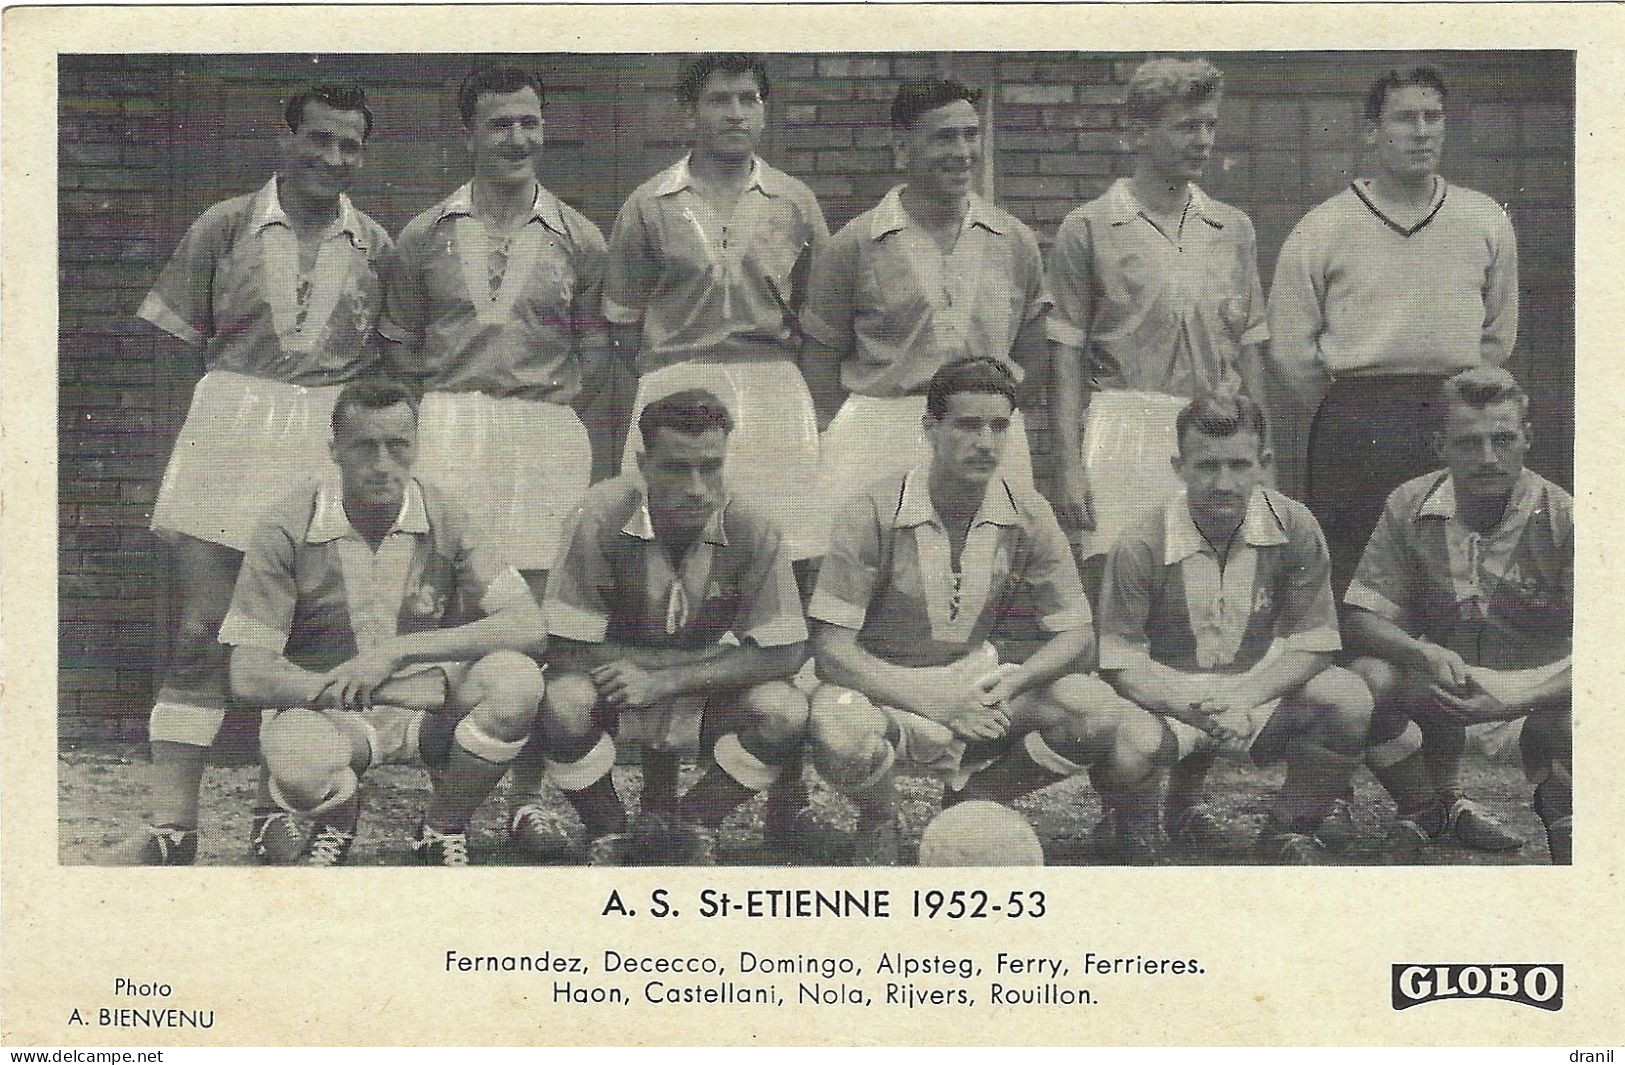 Football - GLOBO - Photo A. BIENVENU -  A. S. St-ETIENNE 1952-53 - Unclassified